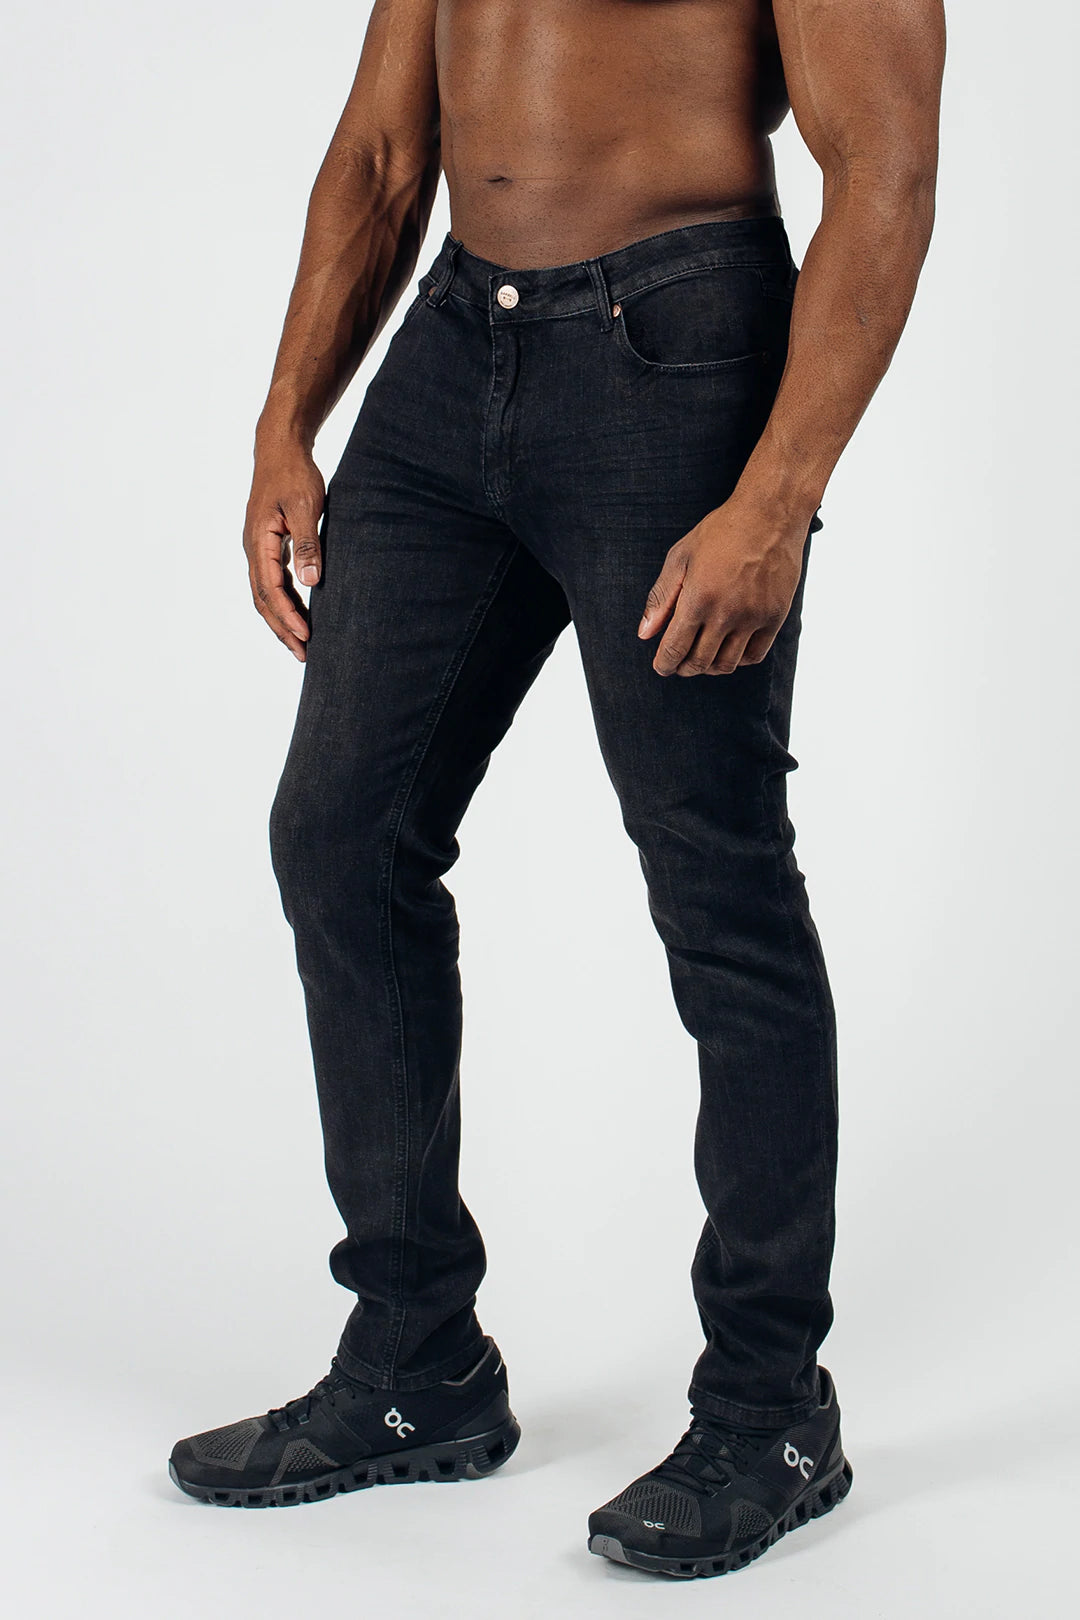 https://barbellapparel.com/cdn/shop/products/barbell-slim-athletic-fit-jeans-front-jet-black_1400x.webp?v=1647892147